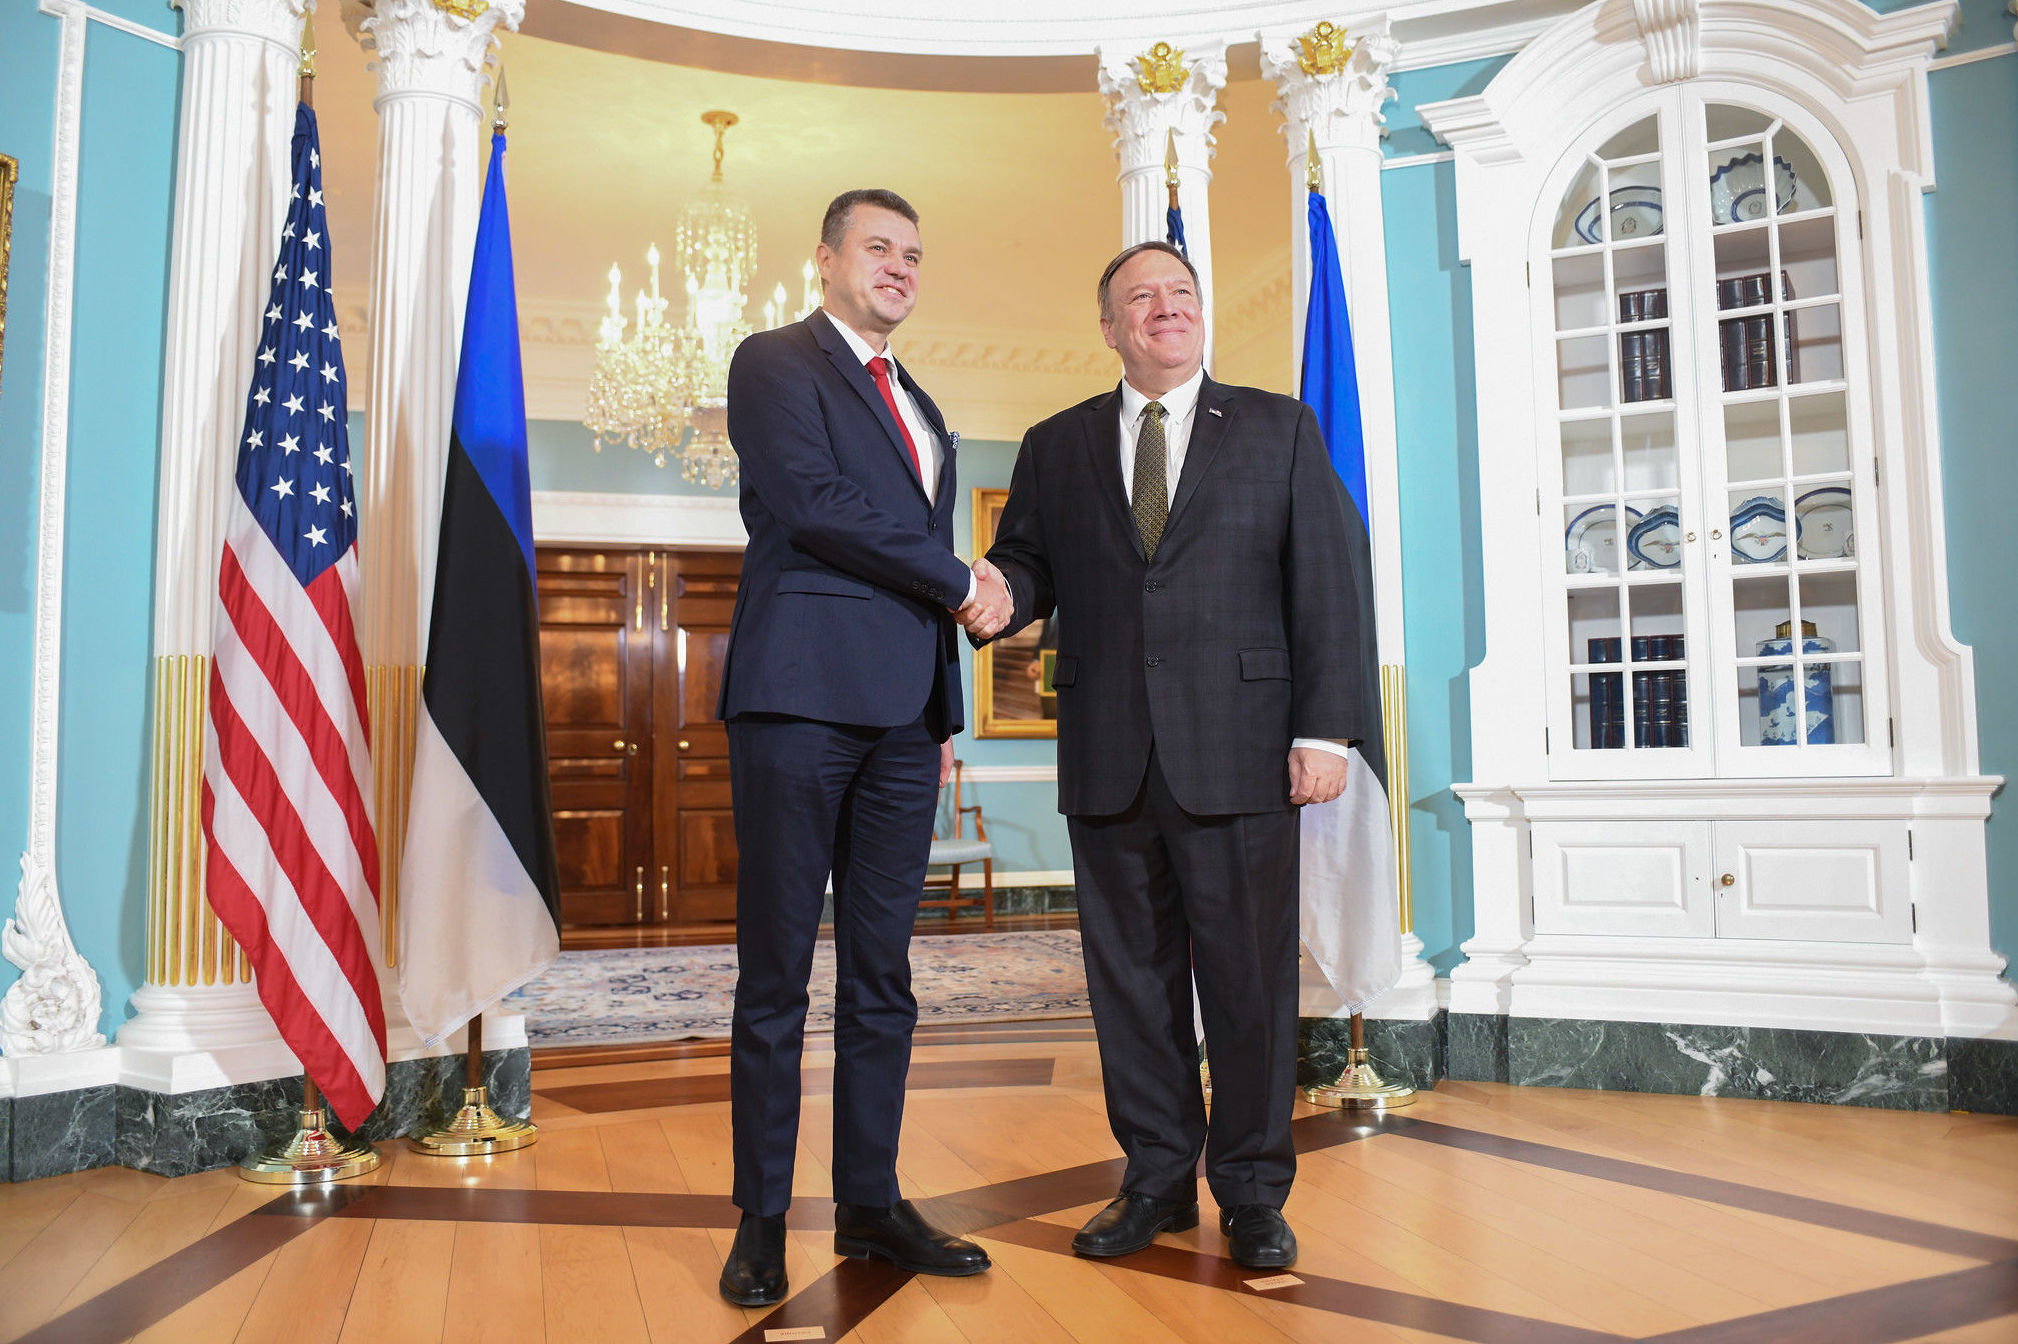 Госсекретарь США Майк Помпео (справа) и министр иностранных дел Эстонии Урмас Рейнсалу, 7 октября 2019 года